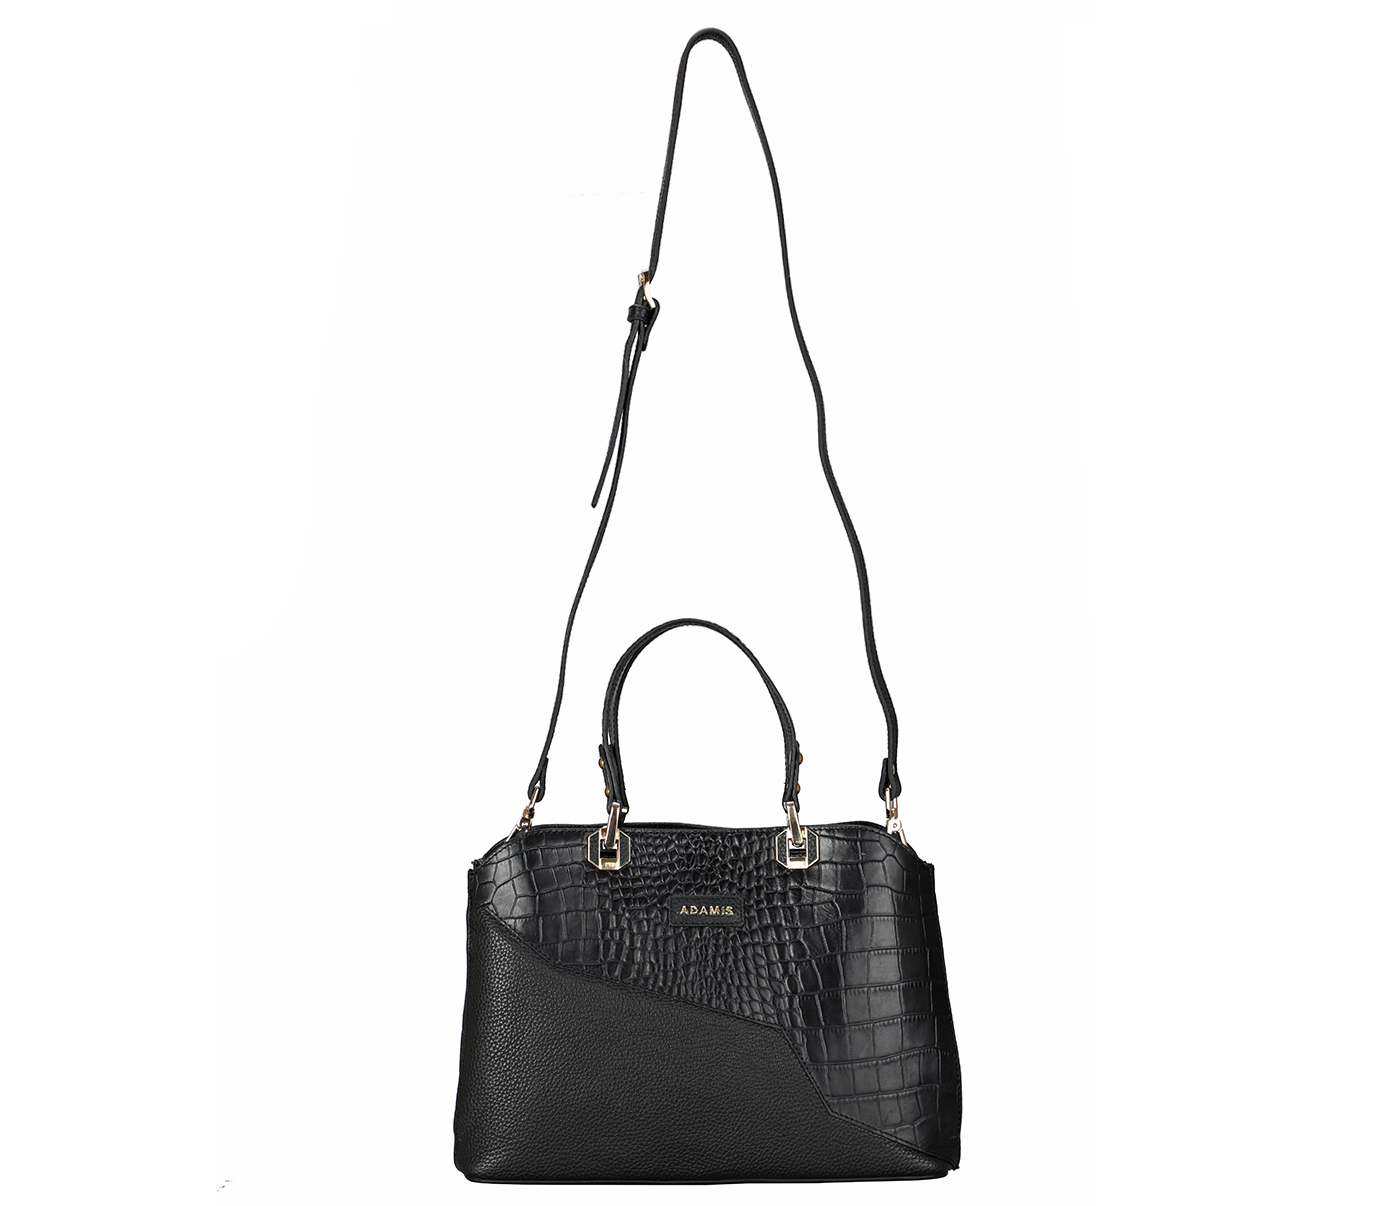 B873-Noelia-Shoulder work bag in Genuine Leather - Black